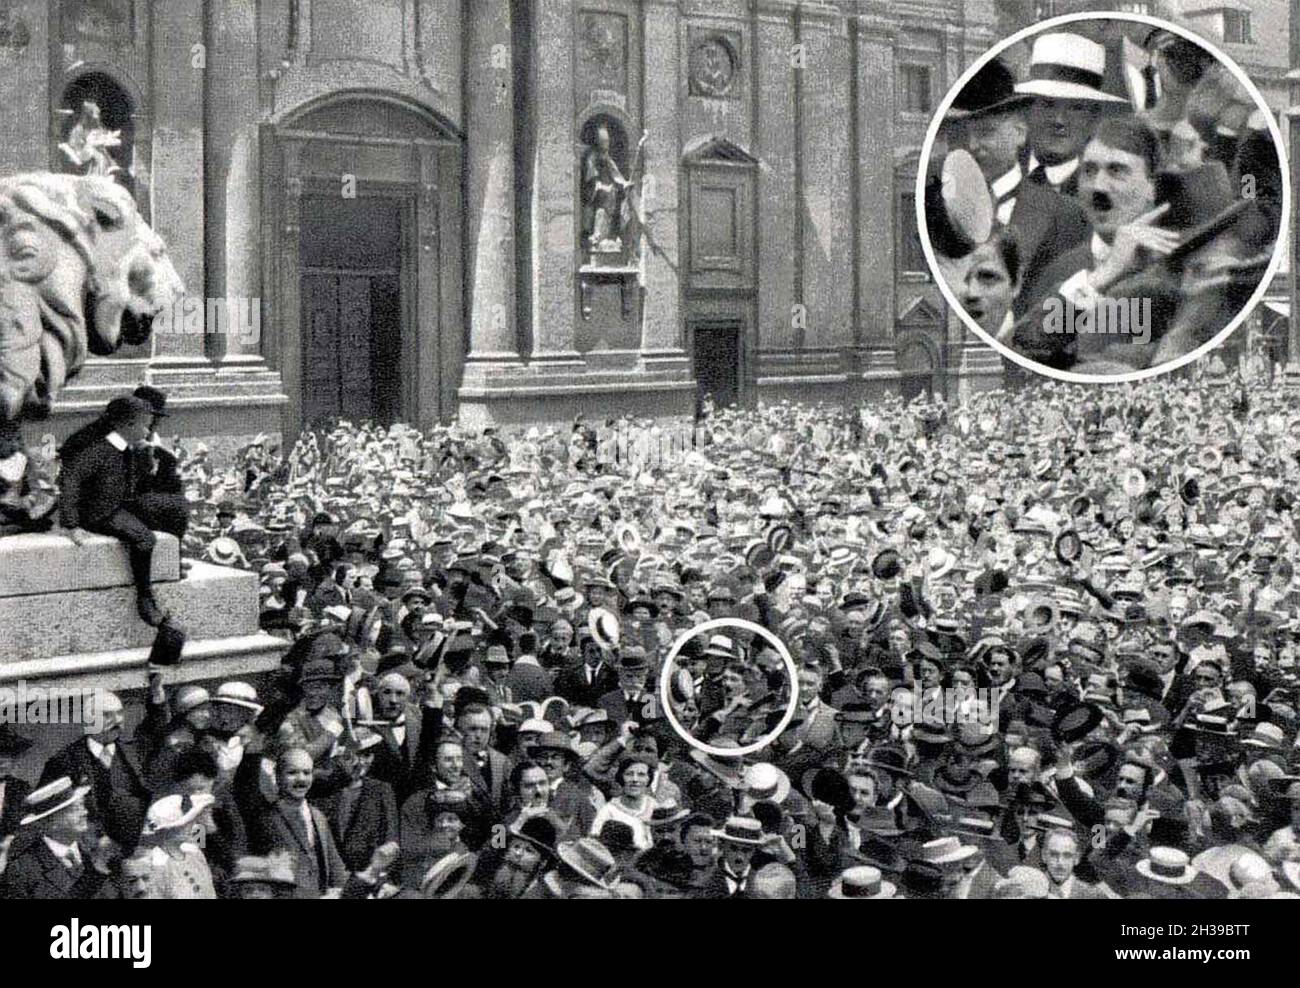 Una foto que muestra a un joven Adolf Hitler celebrando el estallido de la guerra mundial 1 en la Odeonplatz de Viena. Sin embargo, hay cierta sospecha de que la foto fue falsificada como parte de la propaganda de Hitler. Otras imágenes y películas de la escena no muestran a Hitler, y el fotógrafo fue Heinrich Hoffman que se convirtió en el fotógrafo oficial de Hitler y cuya asistente fue Eva Braun. Más revelador aún, Hitler no hizo mención de estar allí en su autobiografía Mein Kampf. Foto de stock